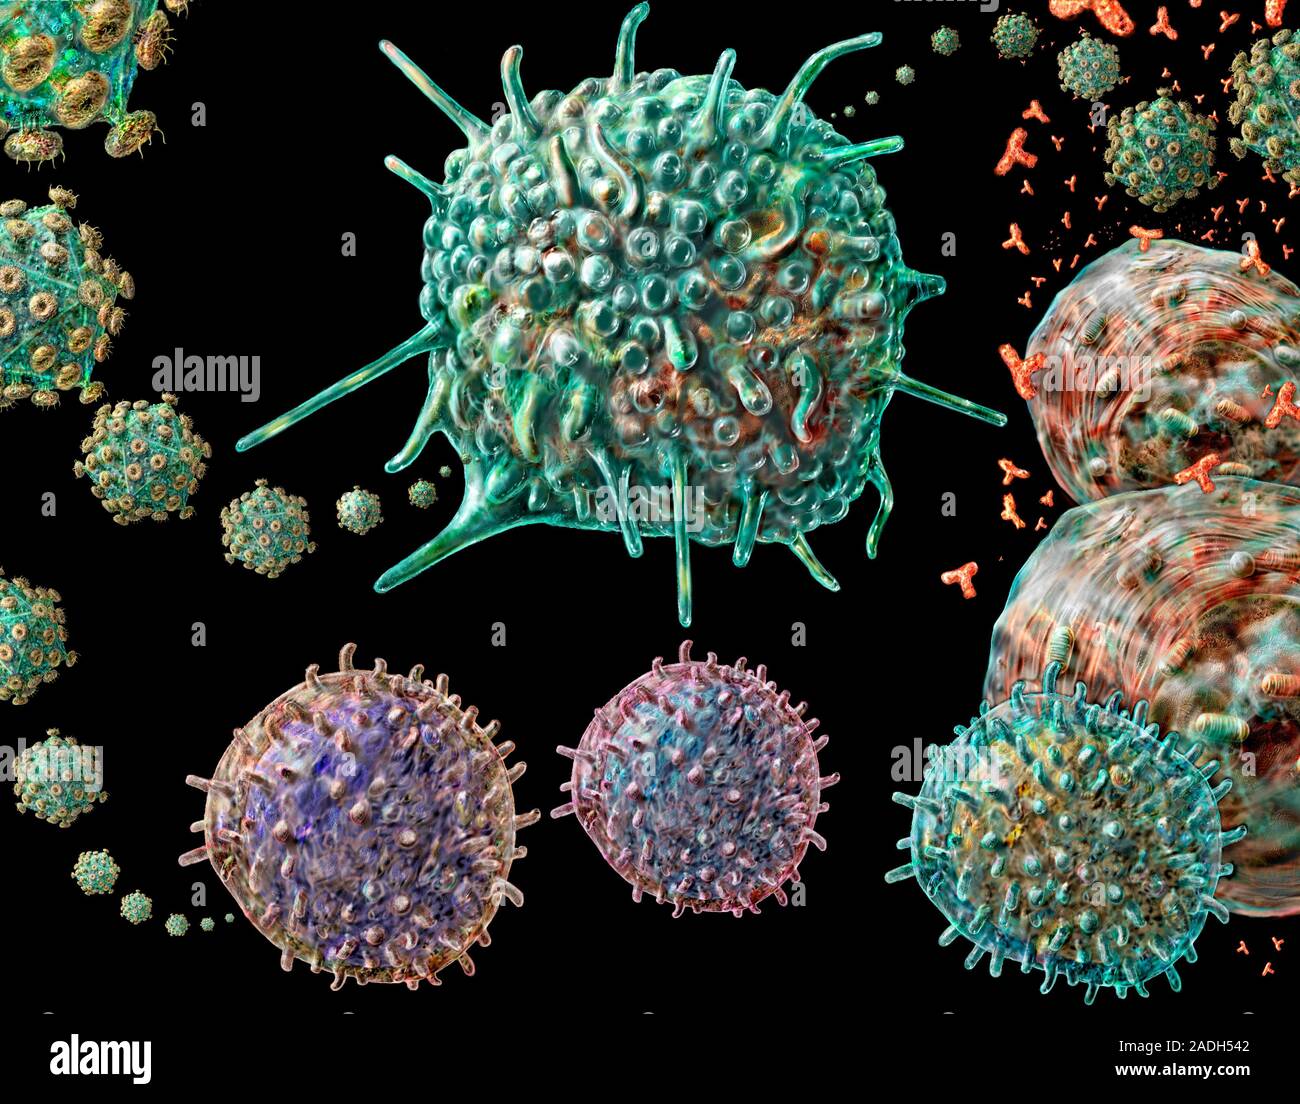 Вич название вируса. Вирусы под микроскопом. Вирус ВИЧ под микроскопом. Вирусы фото. ВИЧ изображение вируса.